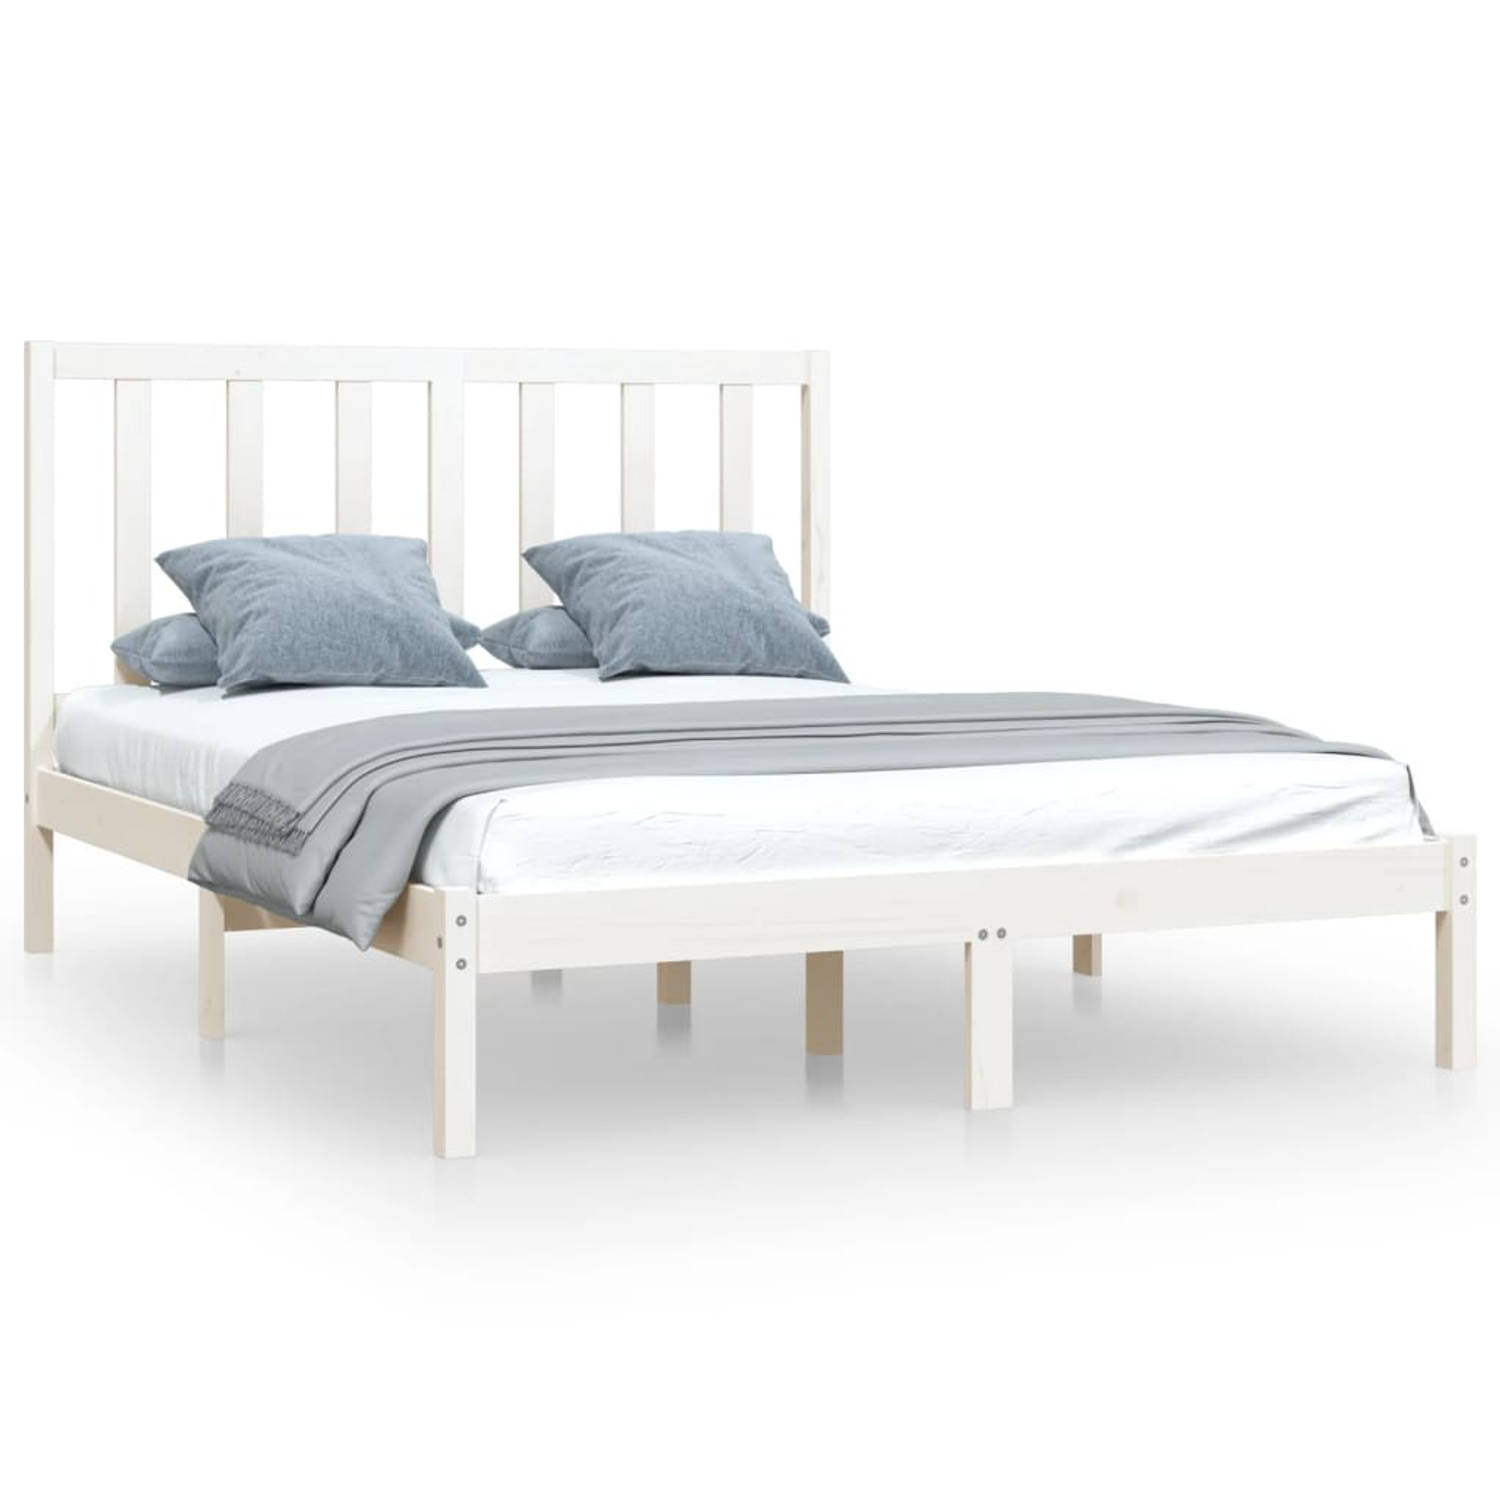 The Living Store Bedframe massief grenenhout wit 140x200 cm - Bedframe - Bedframes - Bed - Bedbodem - Ledikant - Bed Frame - Massief Houten Bedframe - Slaapmeubel - Bedden - Bedbod